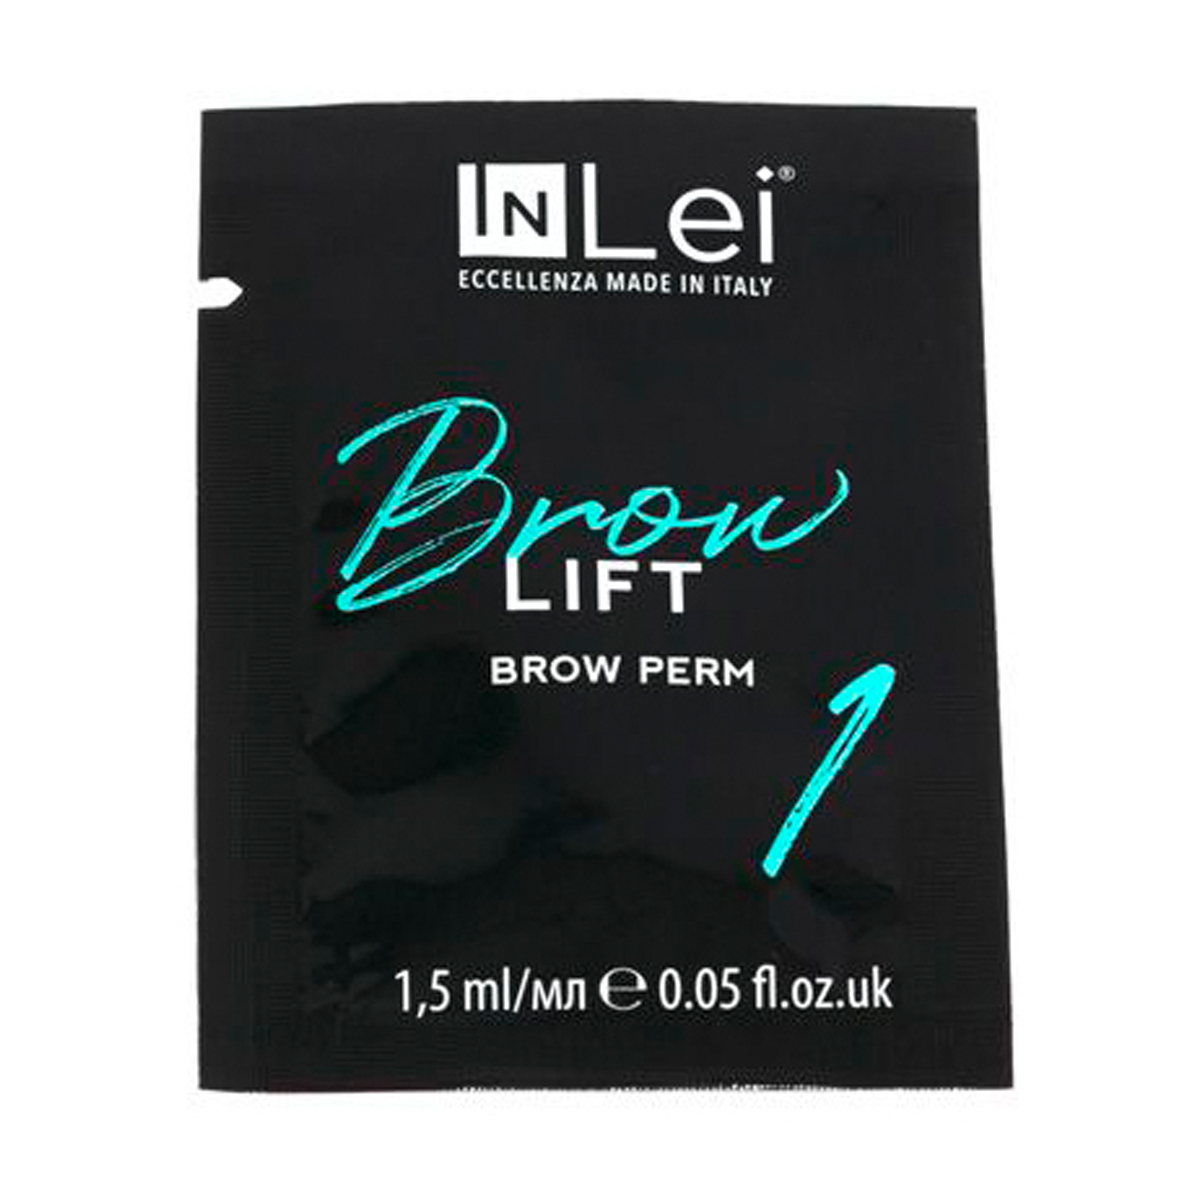 InLei Brow состав для ламинировани бровей в саше №1, 1.5мл